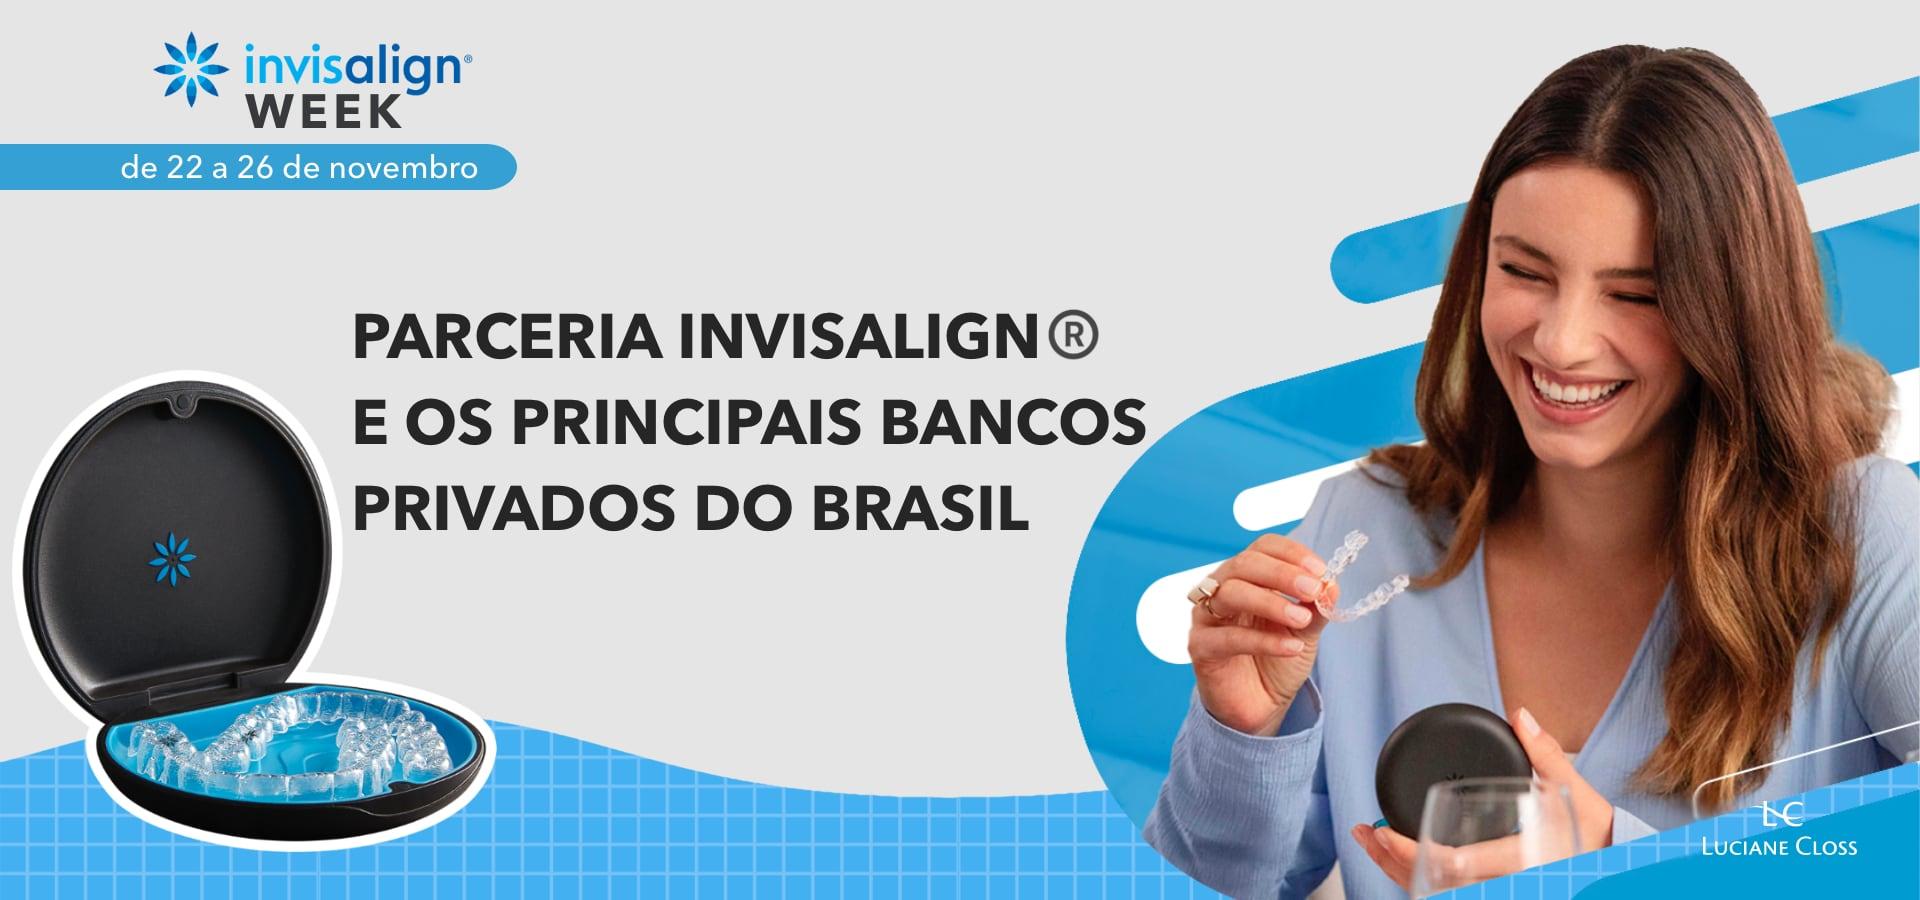 Clinica de Ortodontia Dra Luciane Closs - Porto Alegre - RS